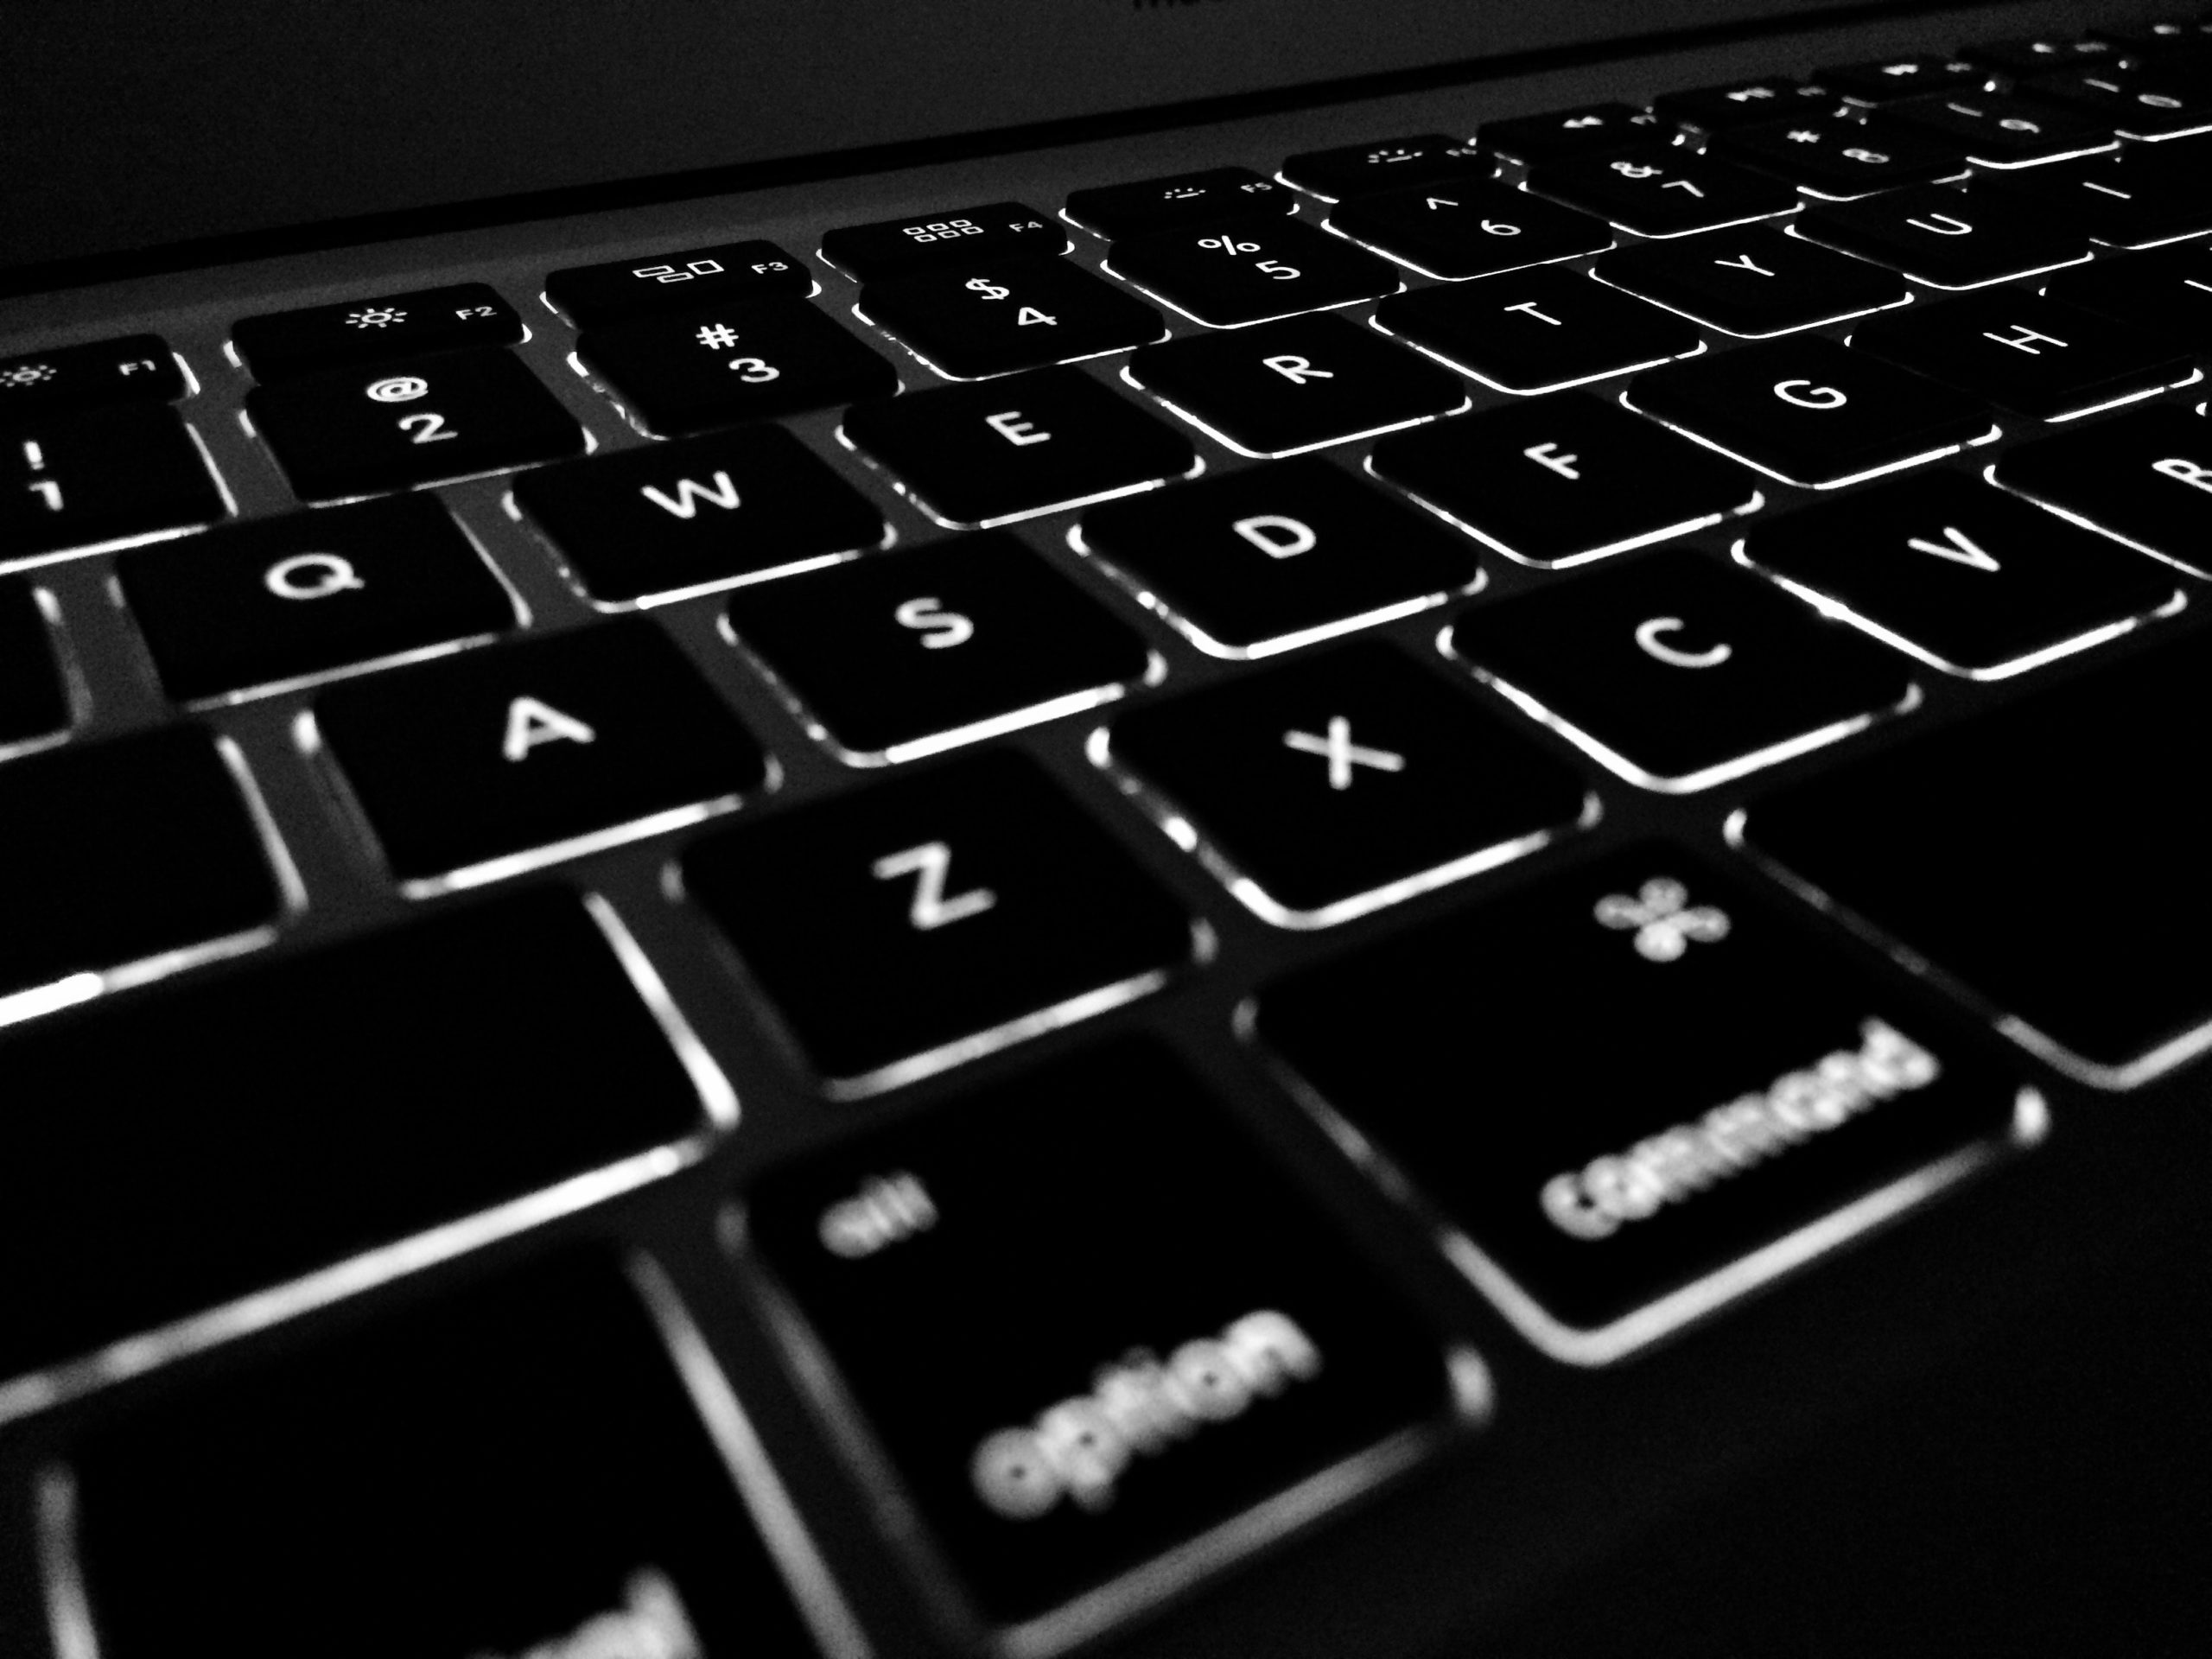 Close up of backlit Apple Macbook keyboard